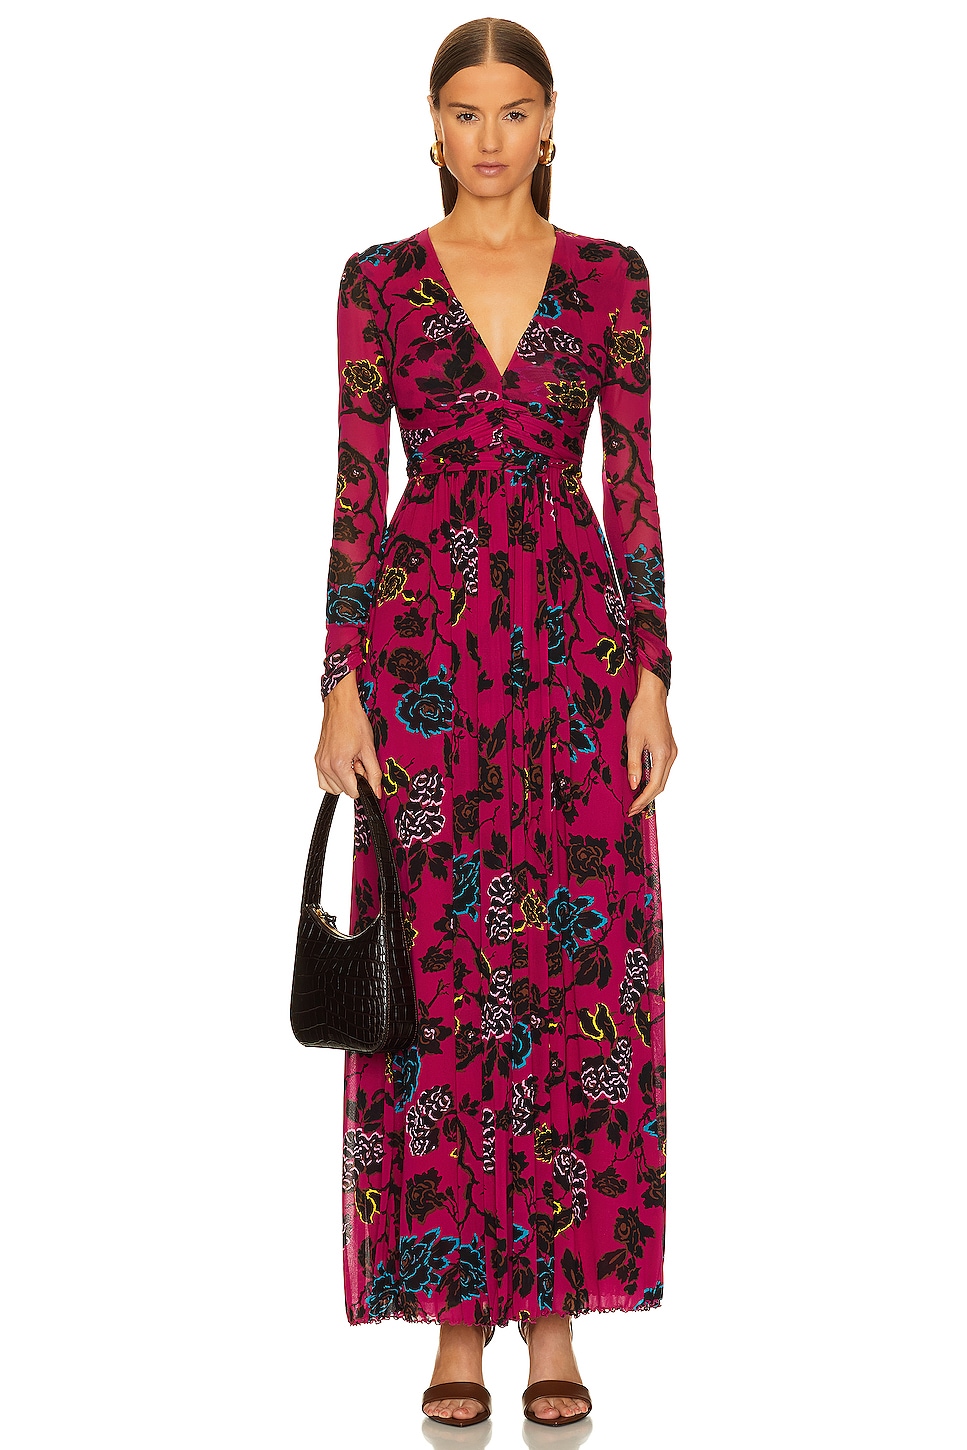 Diane von Furstenberg Anne Dress in China Vine Poison Pink | REVOLVE